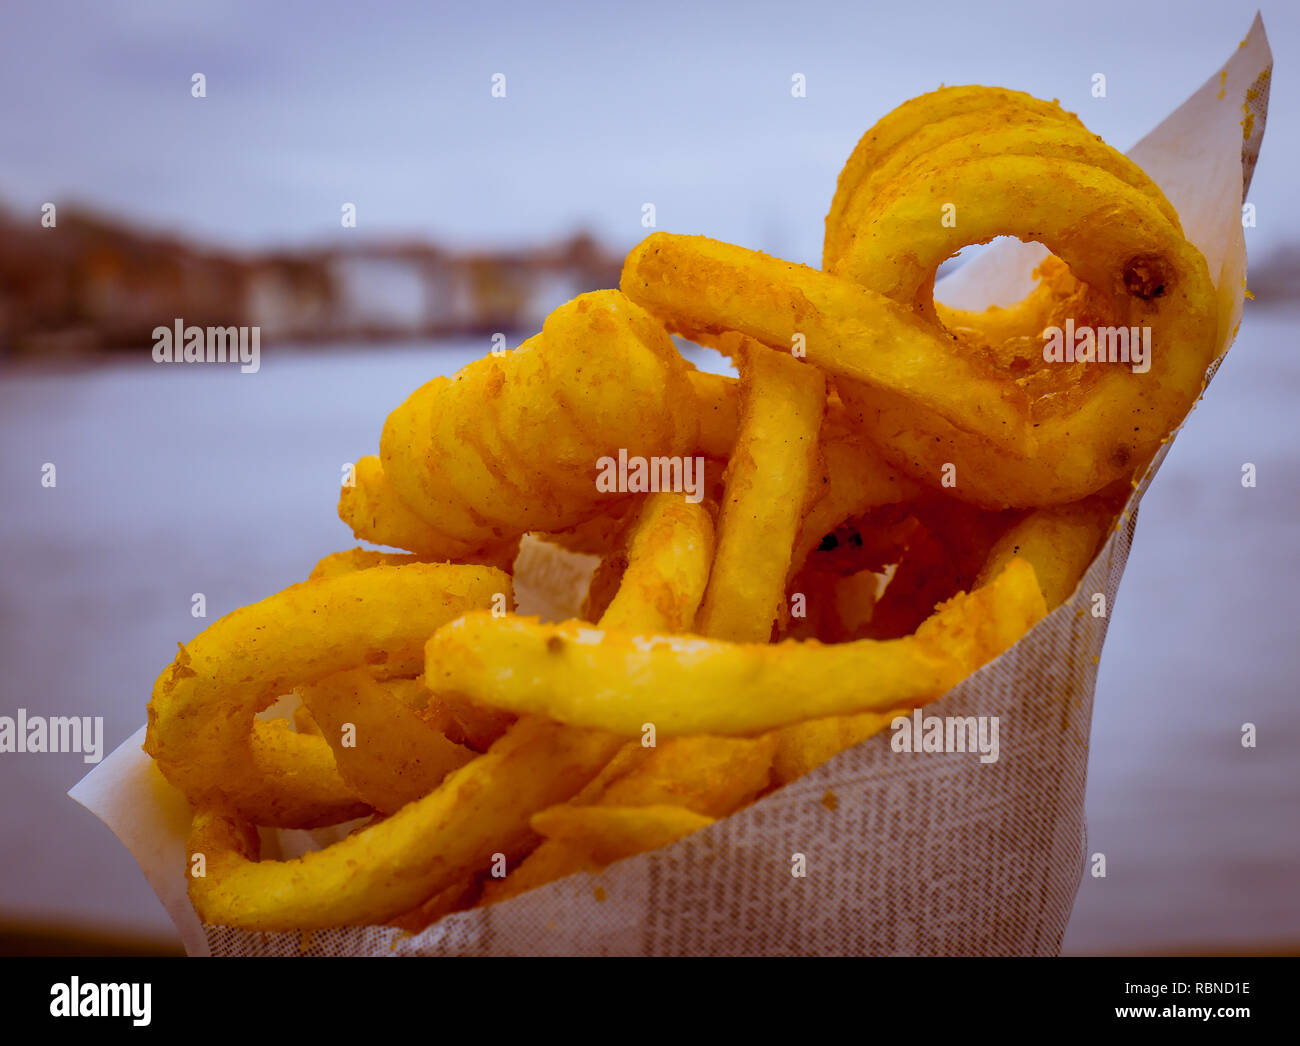 https://c8.alamy.com/comp/RBND1E/closeup-of-curly-fries-served-in-a-newspaper-RBND1E.jpg